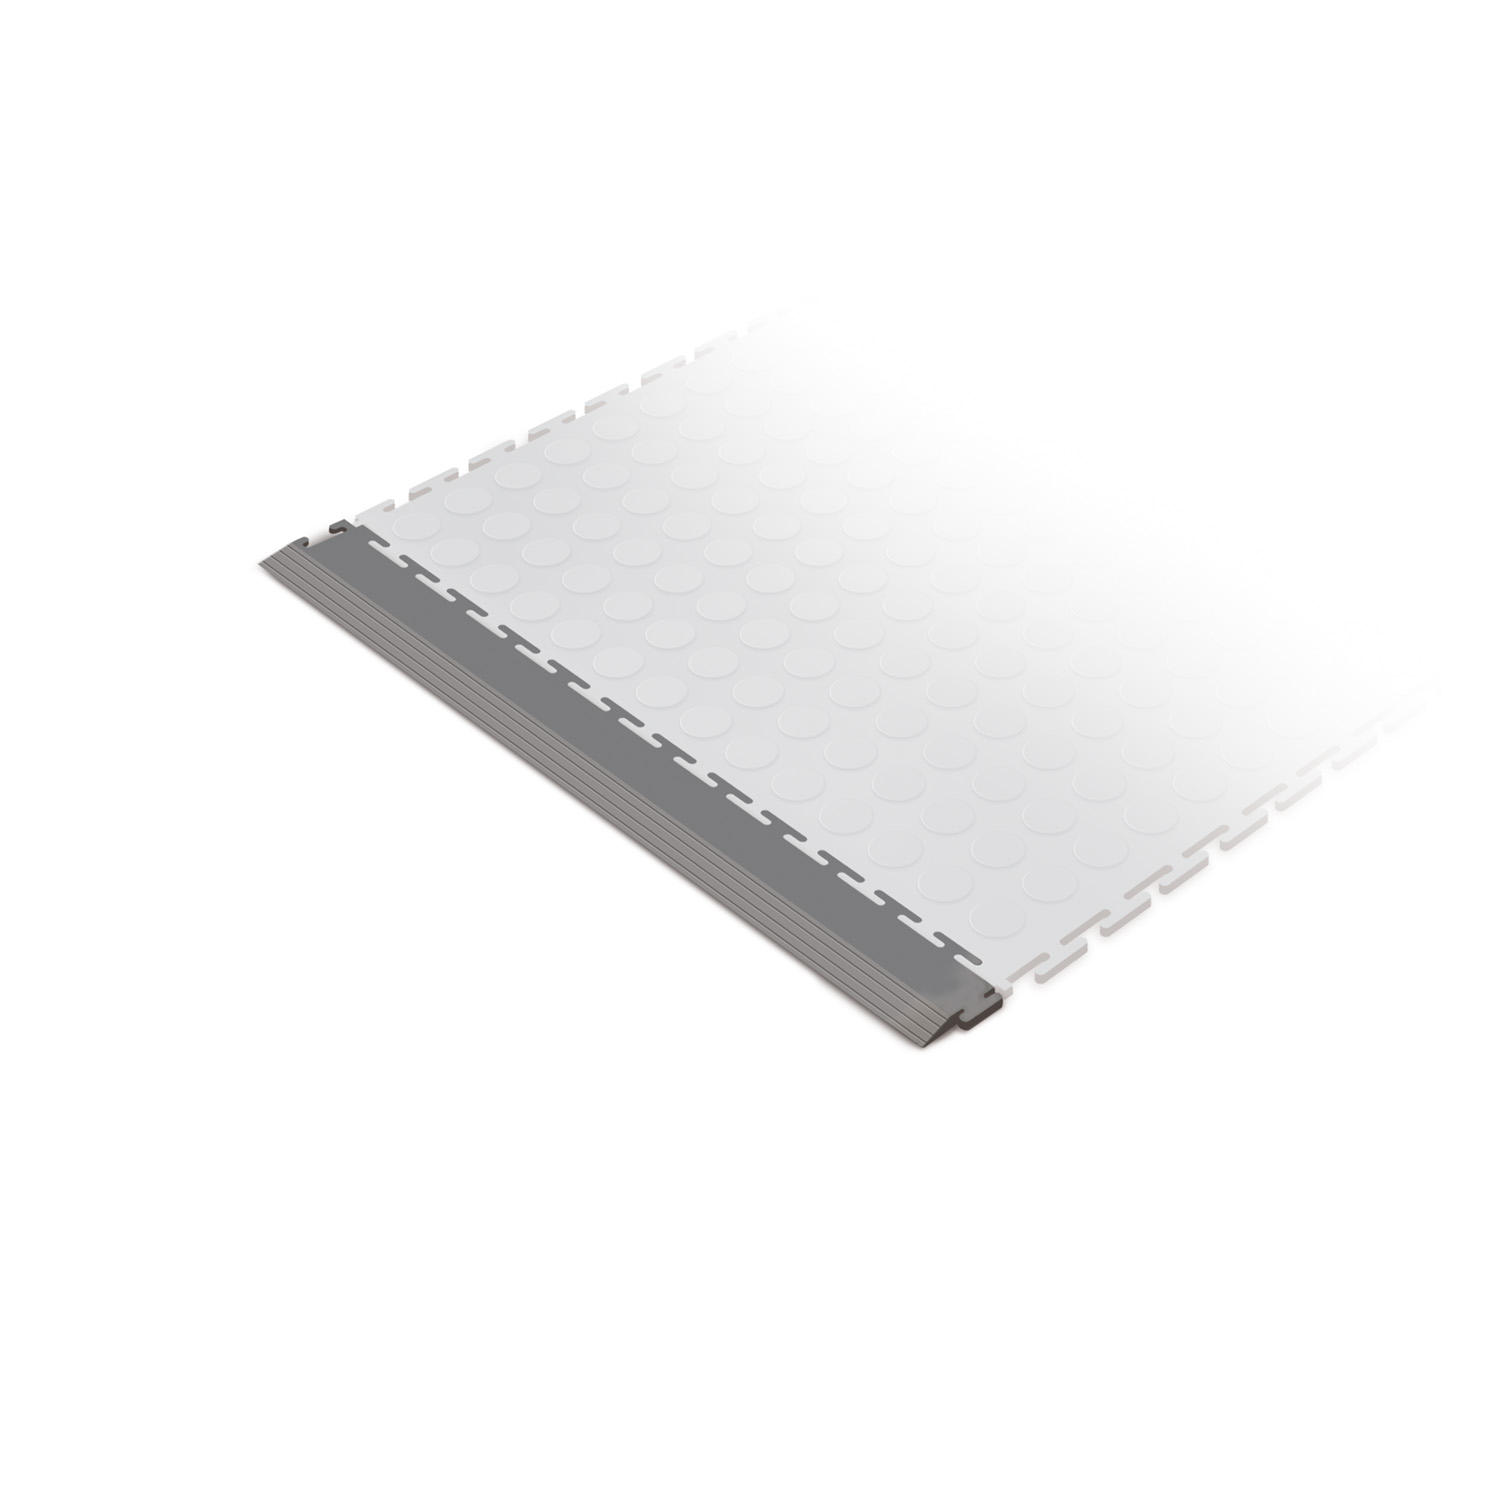 Standard edge ramp tile (dark grey)